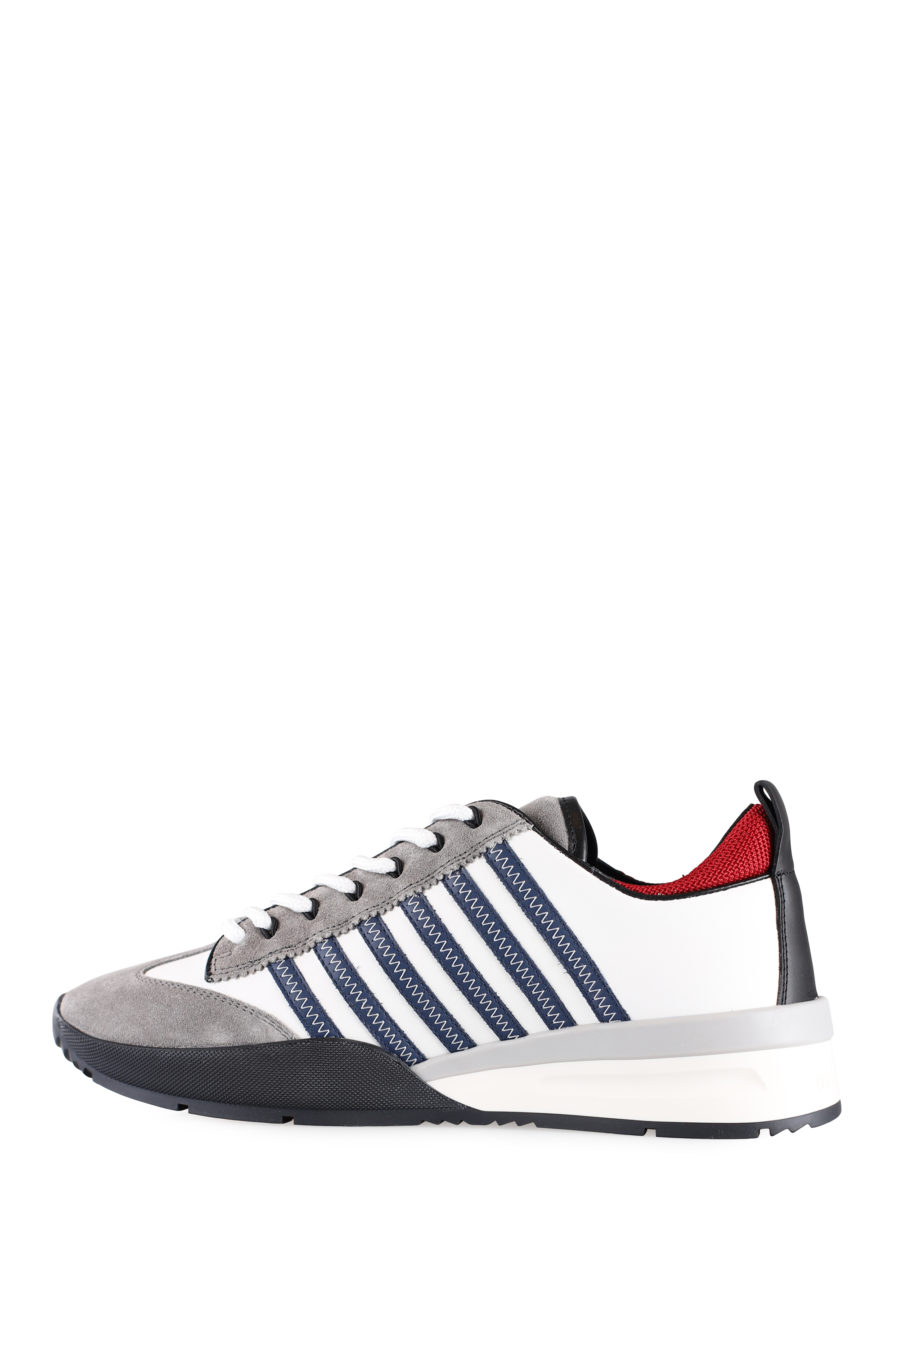 Weiße und graue Turnschuhe mit blauen Linien und roten Details - IMG 0012